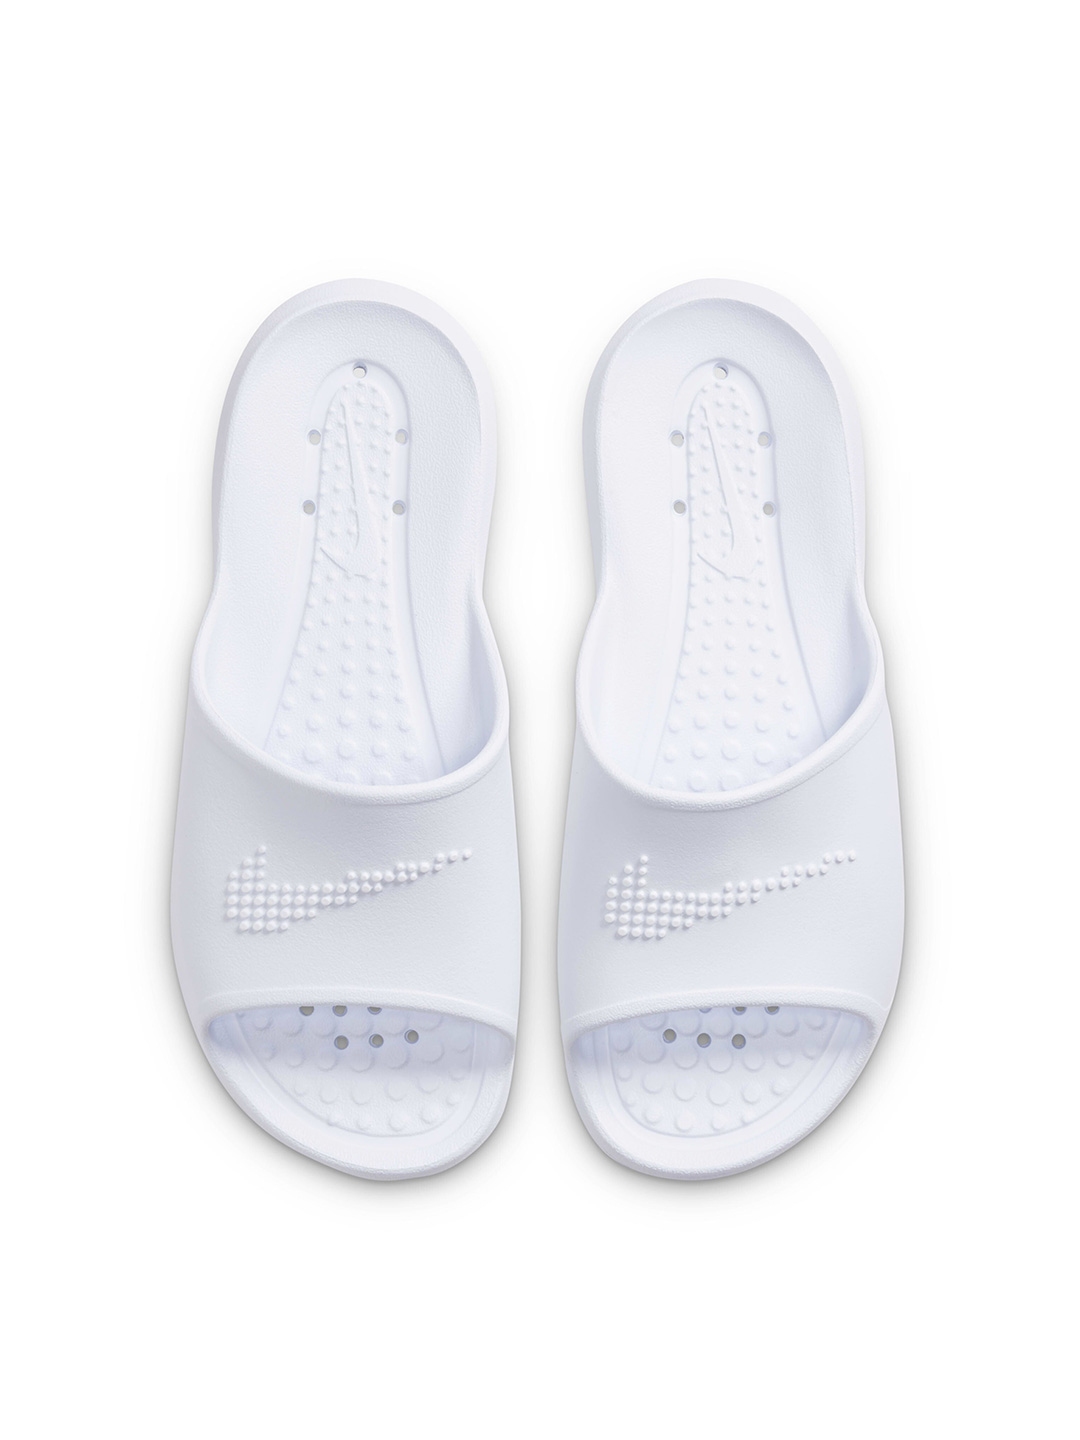 Buy Nike Women White Victori One Shower Slides - Flip Flops for Women ...